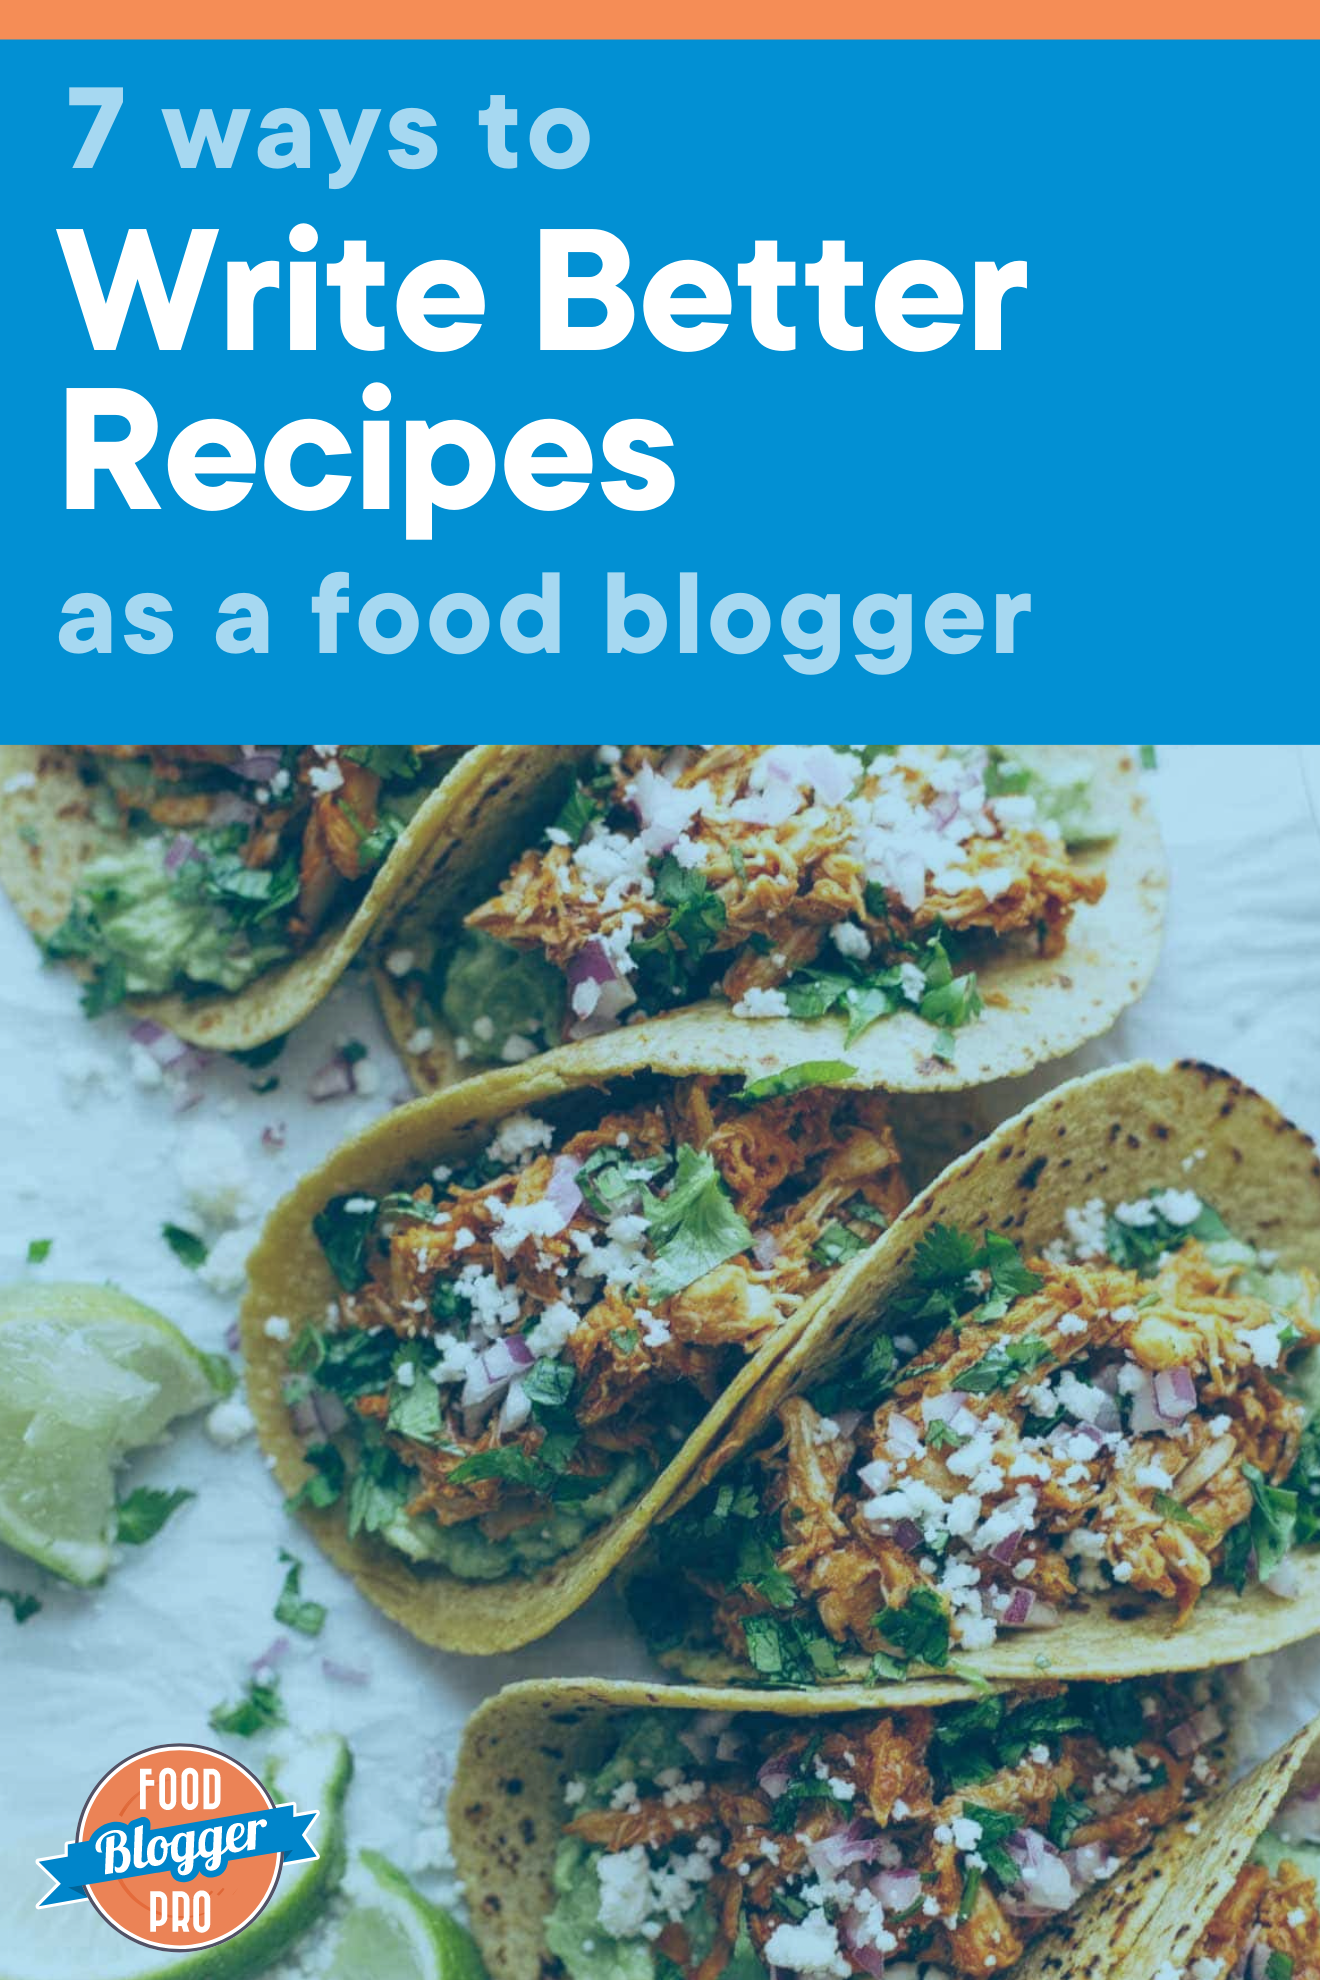 皇冠体育投注下载鸡丁加Tacos头片读7方法写美食博客使用Food博客Pro标识